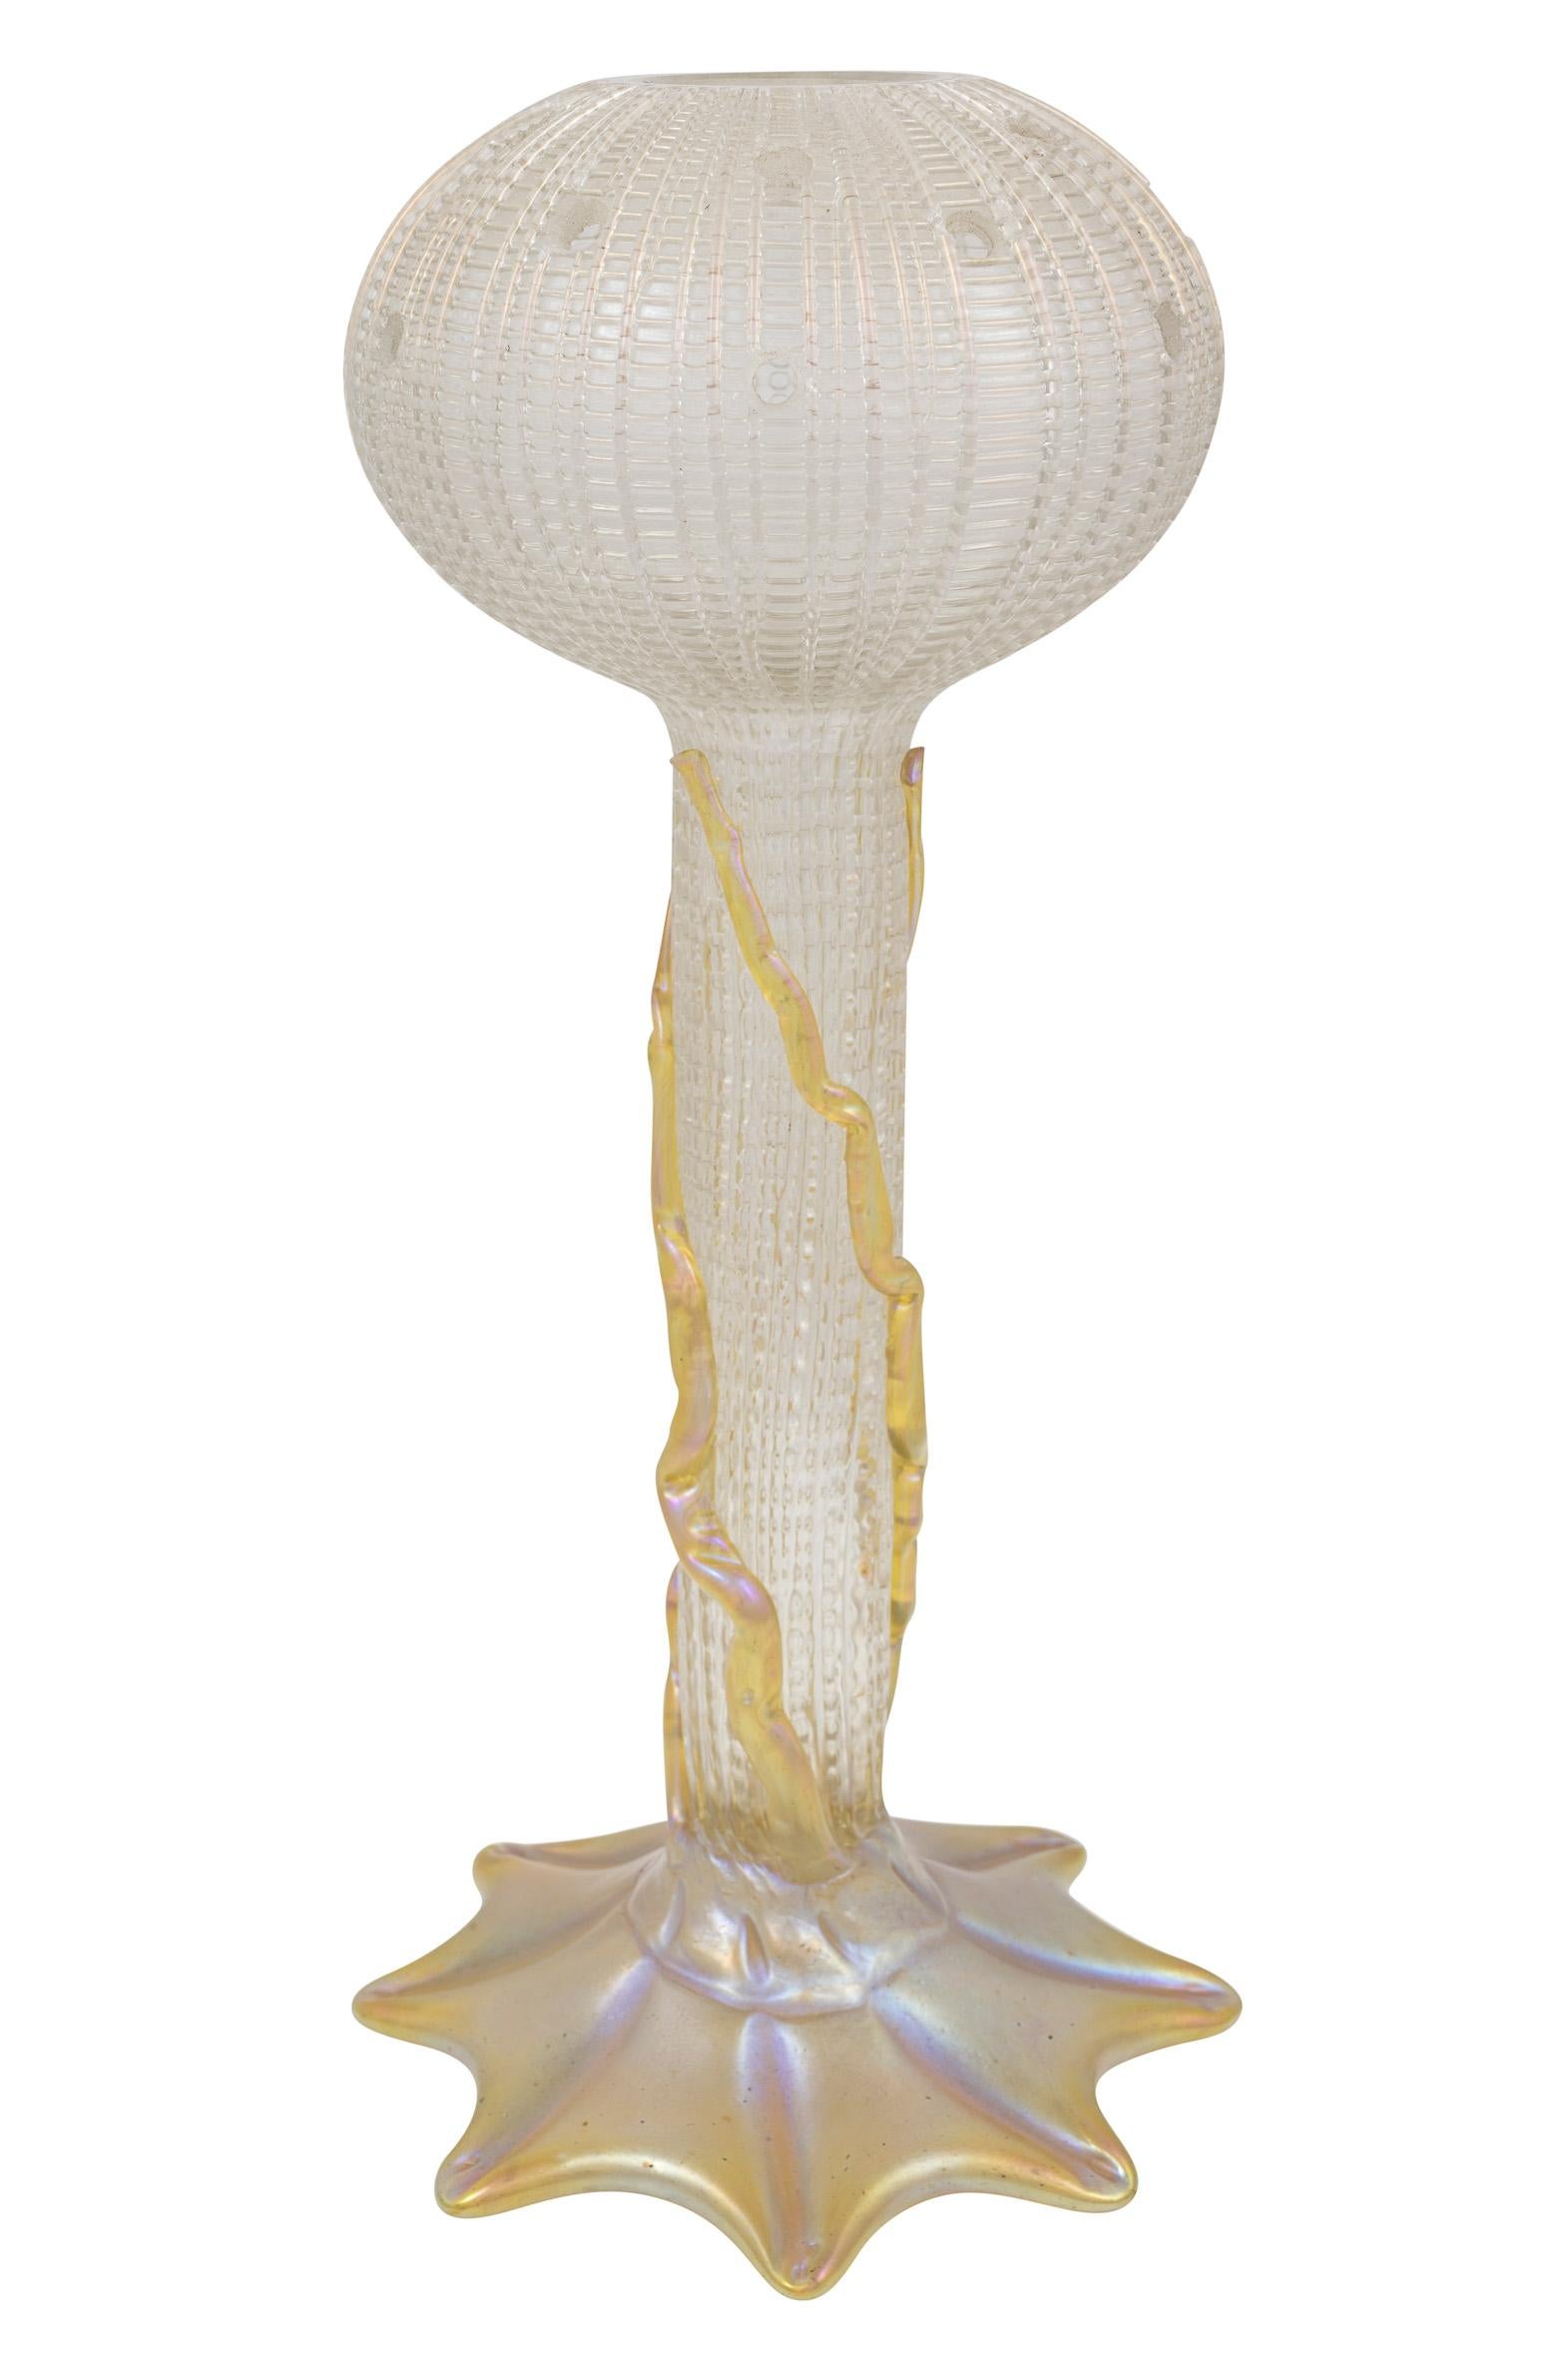 Jugendstil Glass Flower Vessel Adolf Beckert ca. 1905/6 Loetz Vase White Gold Art Nouveau For Sale